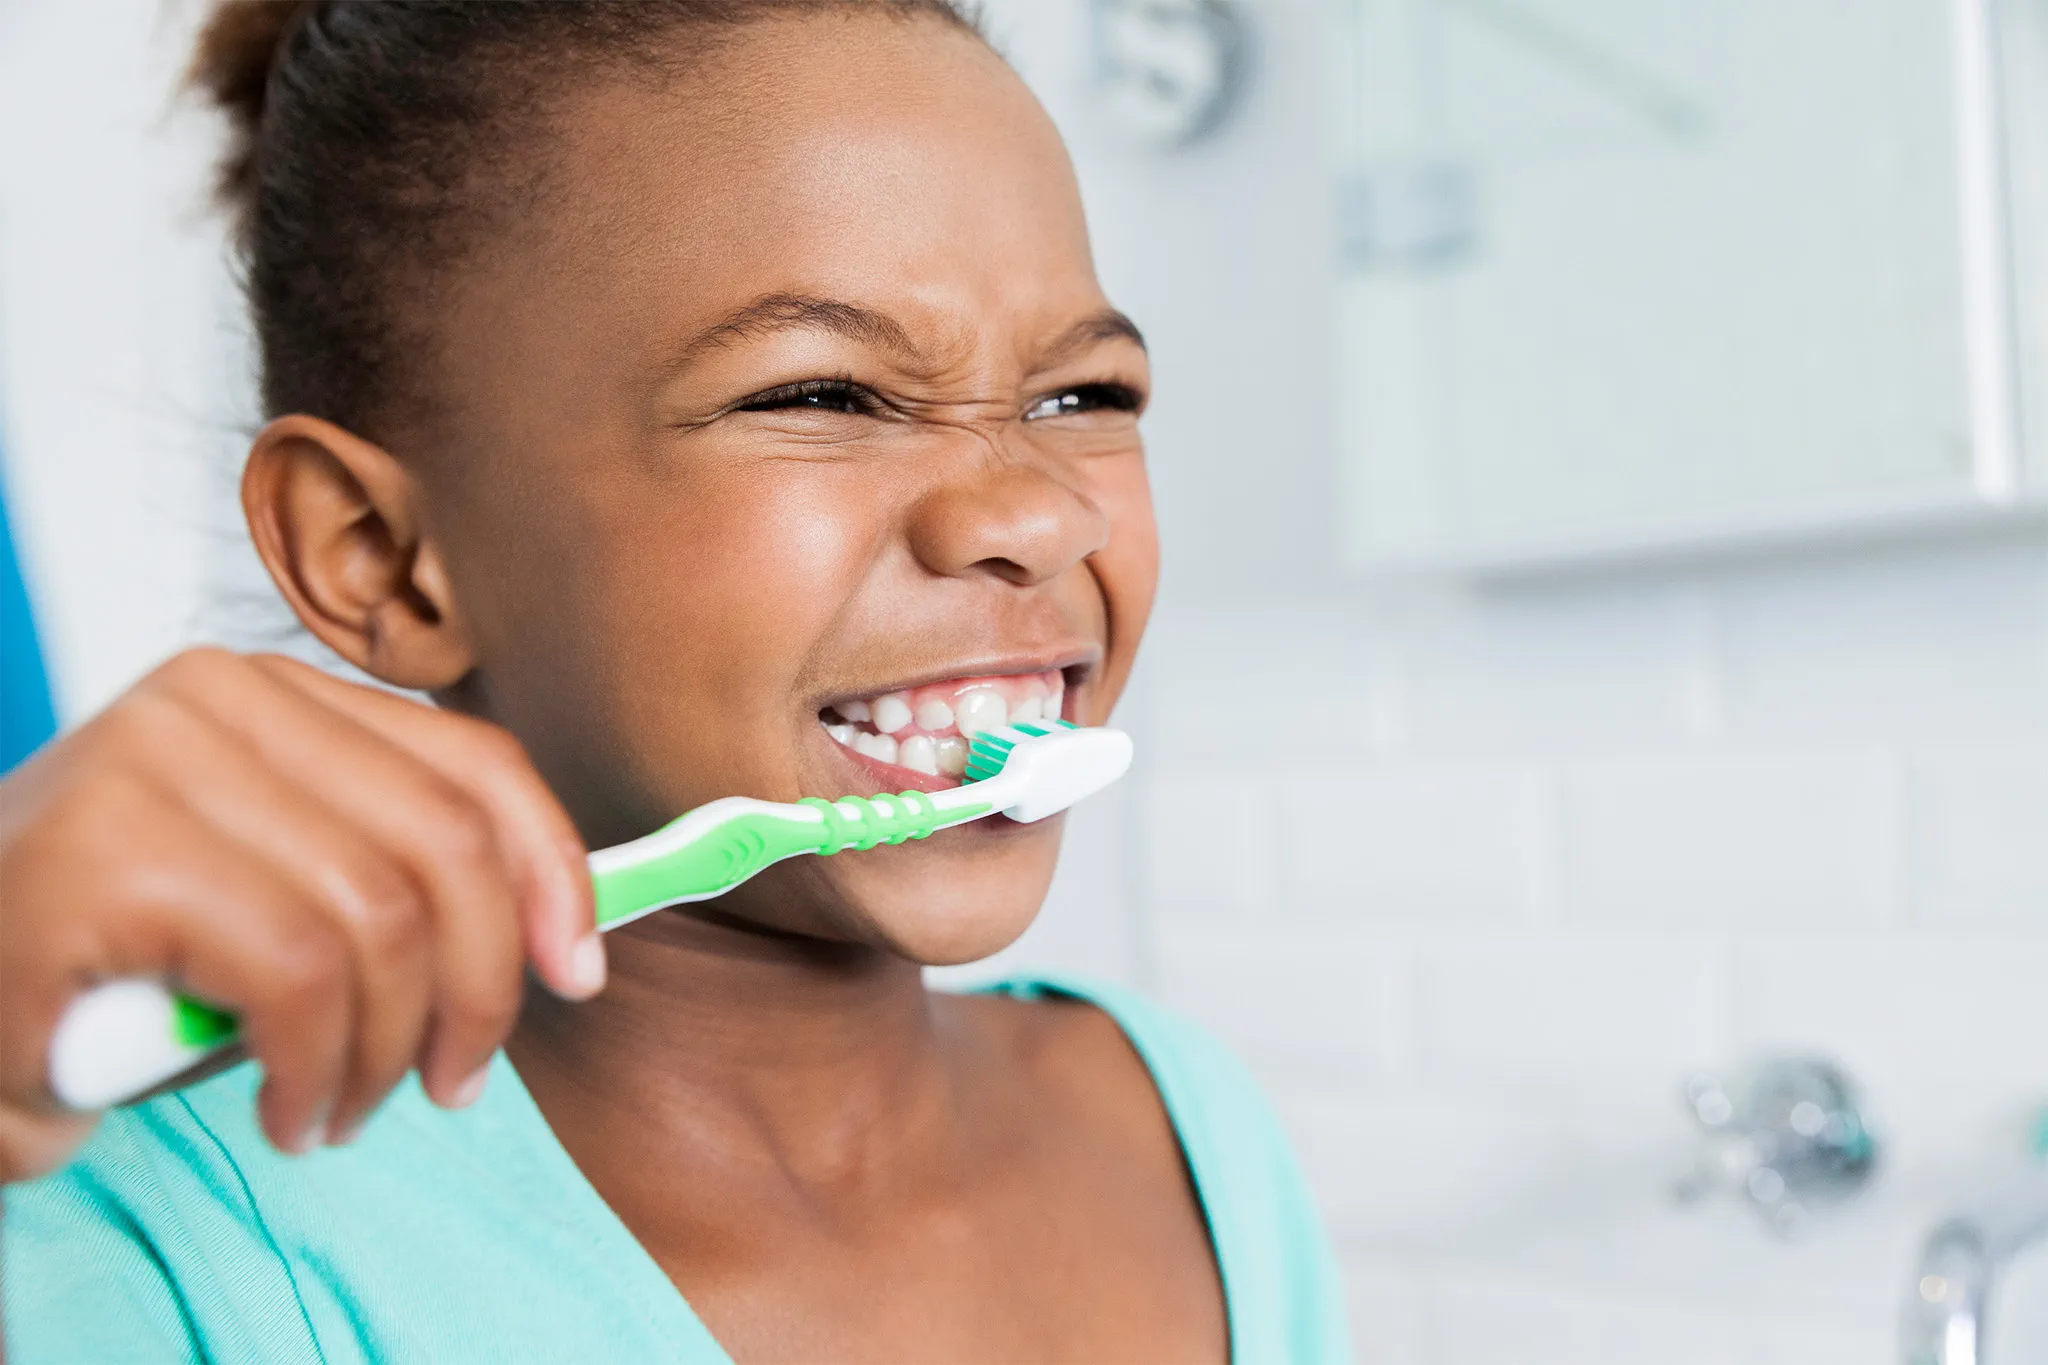 Kind, welches freudig die Zähne putzt